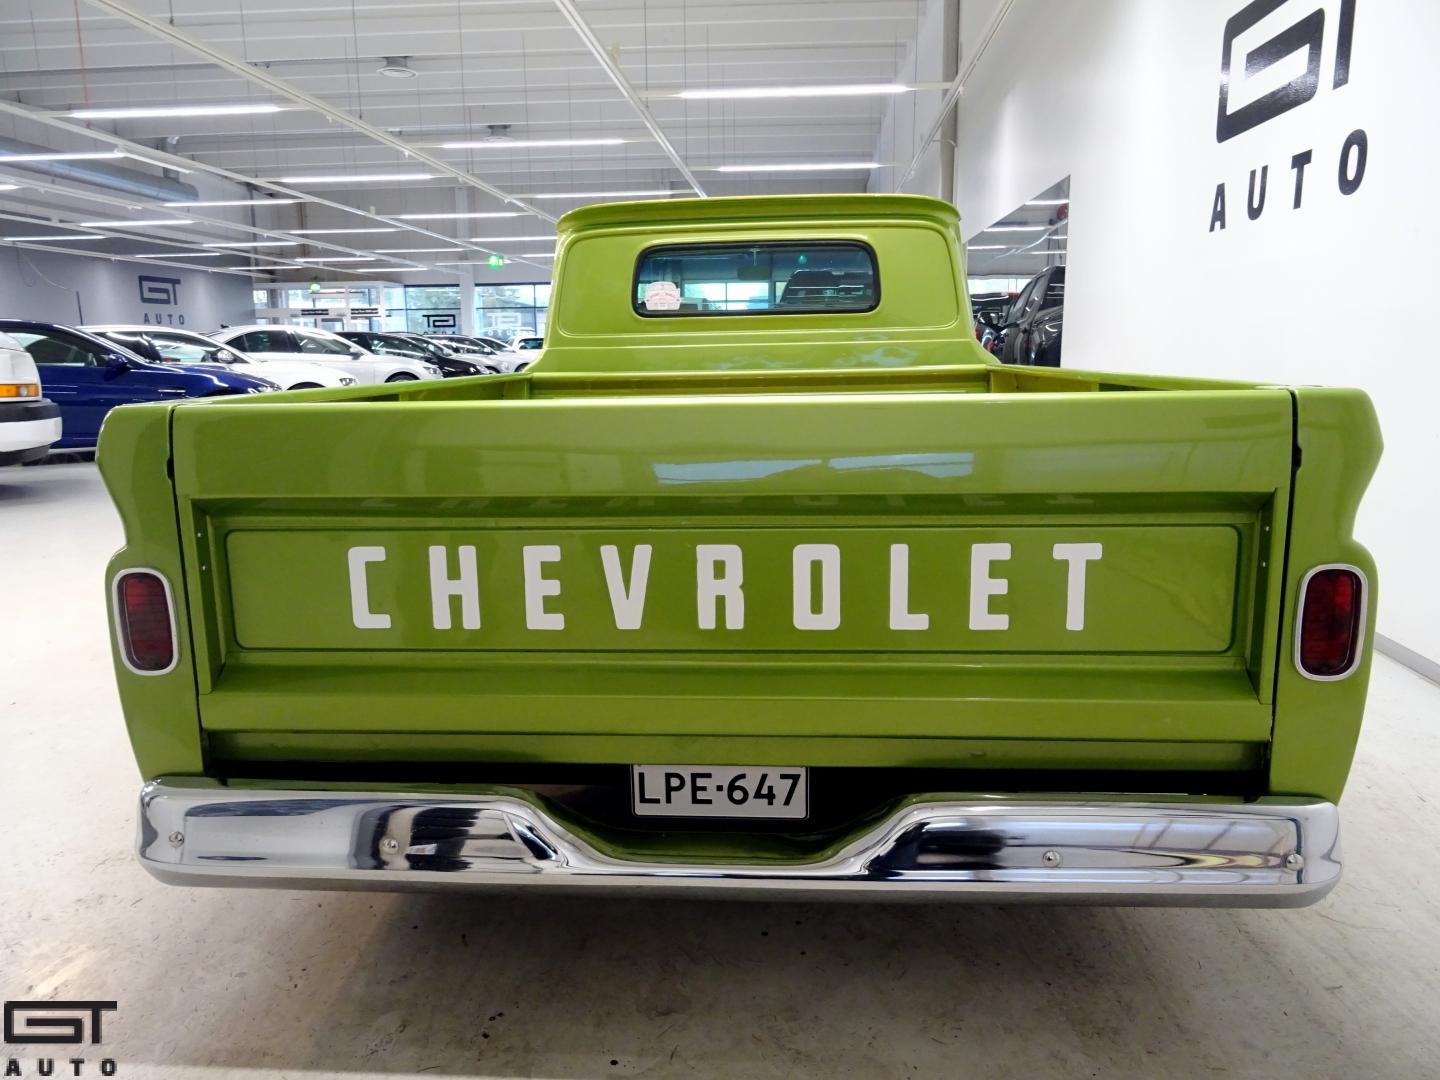 Chevrolet C10